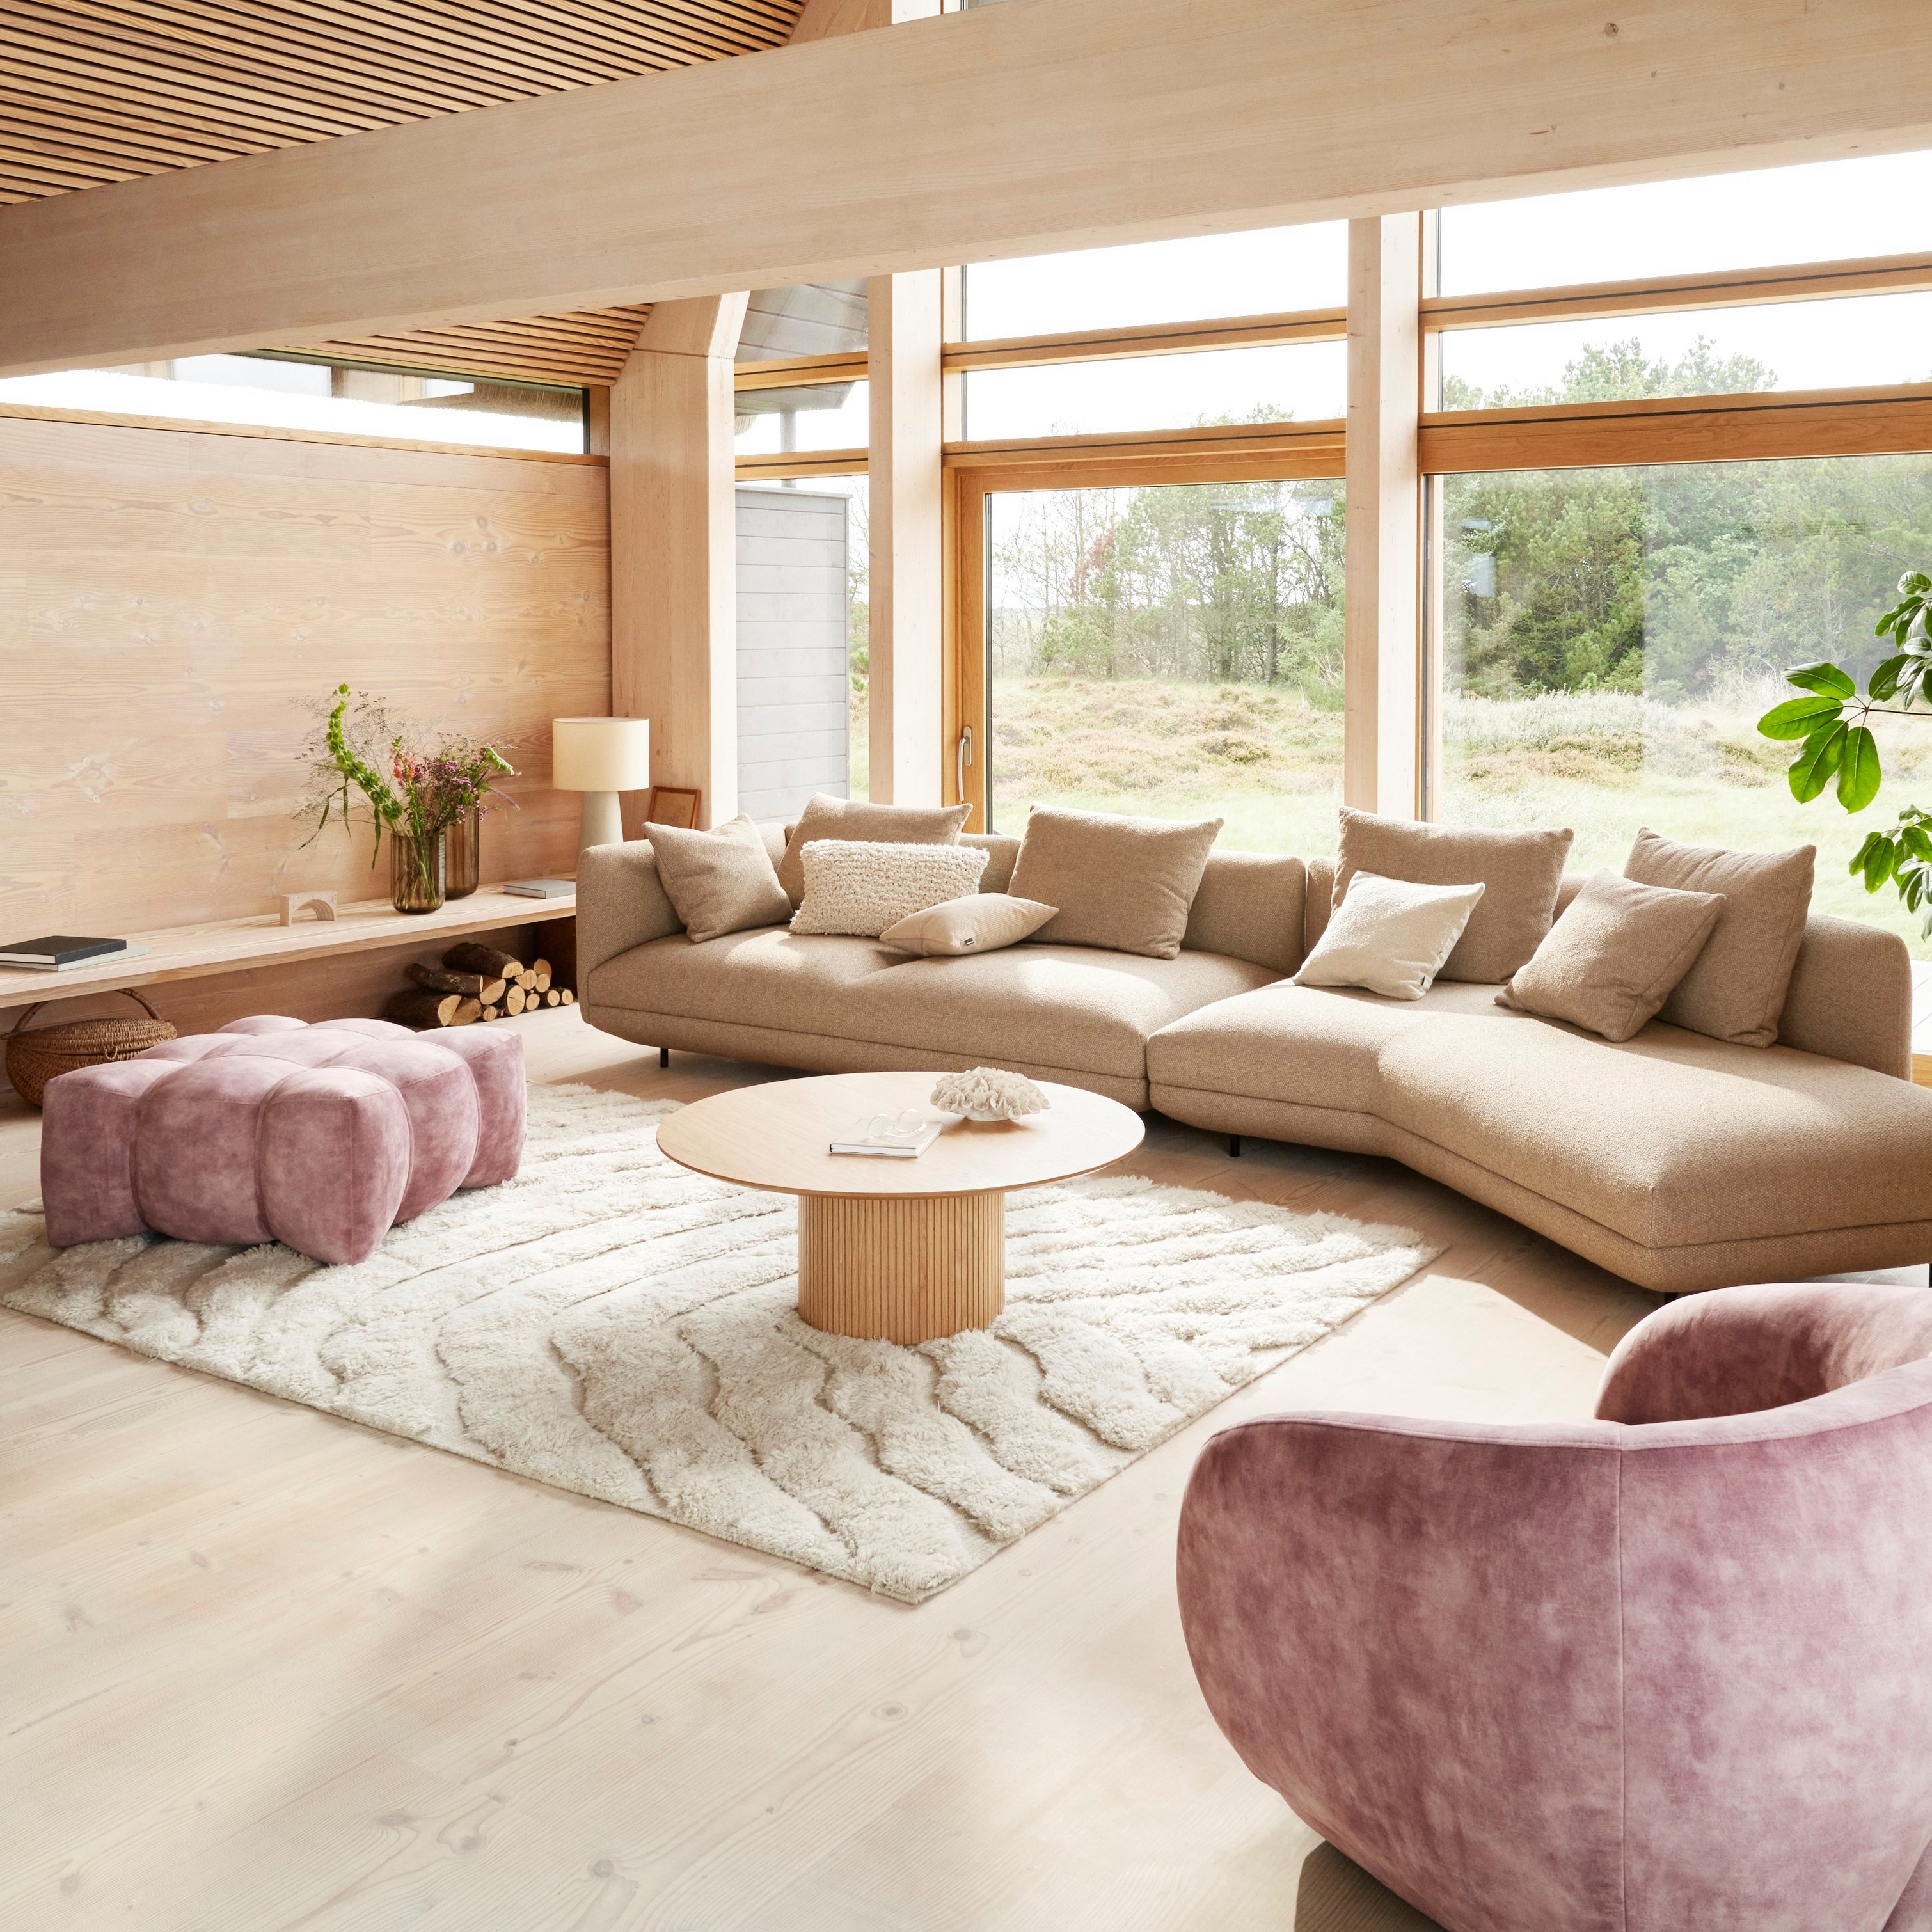 Sofá Salamanca tapizado en tela Lazio marrón en una acogedora y moderna sala en una casa a dos aguas.